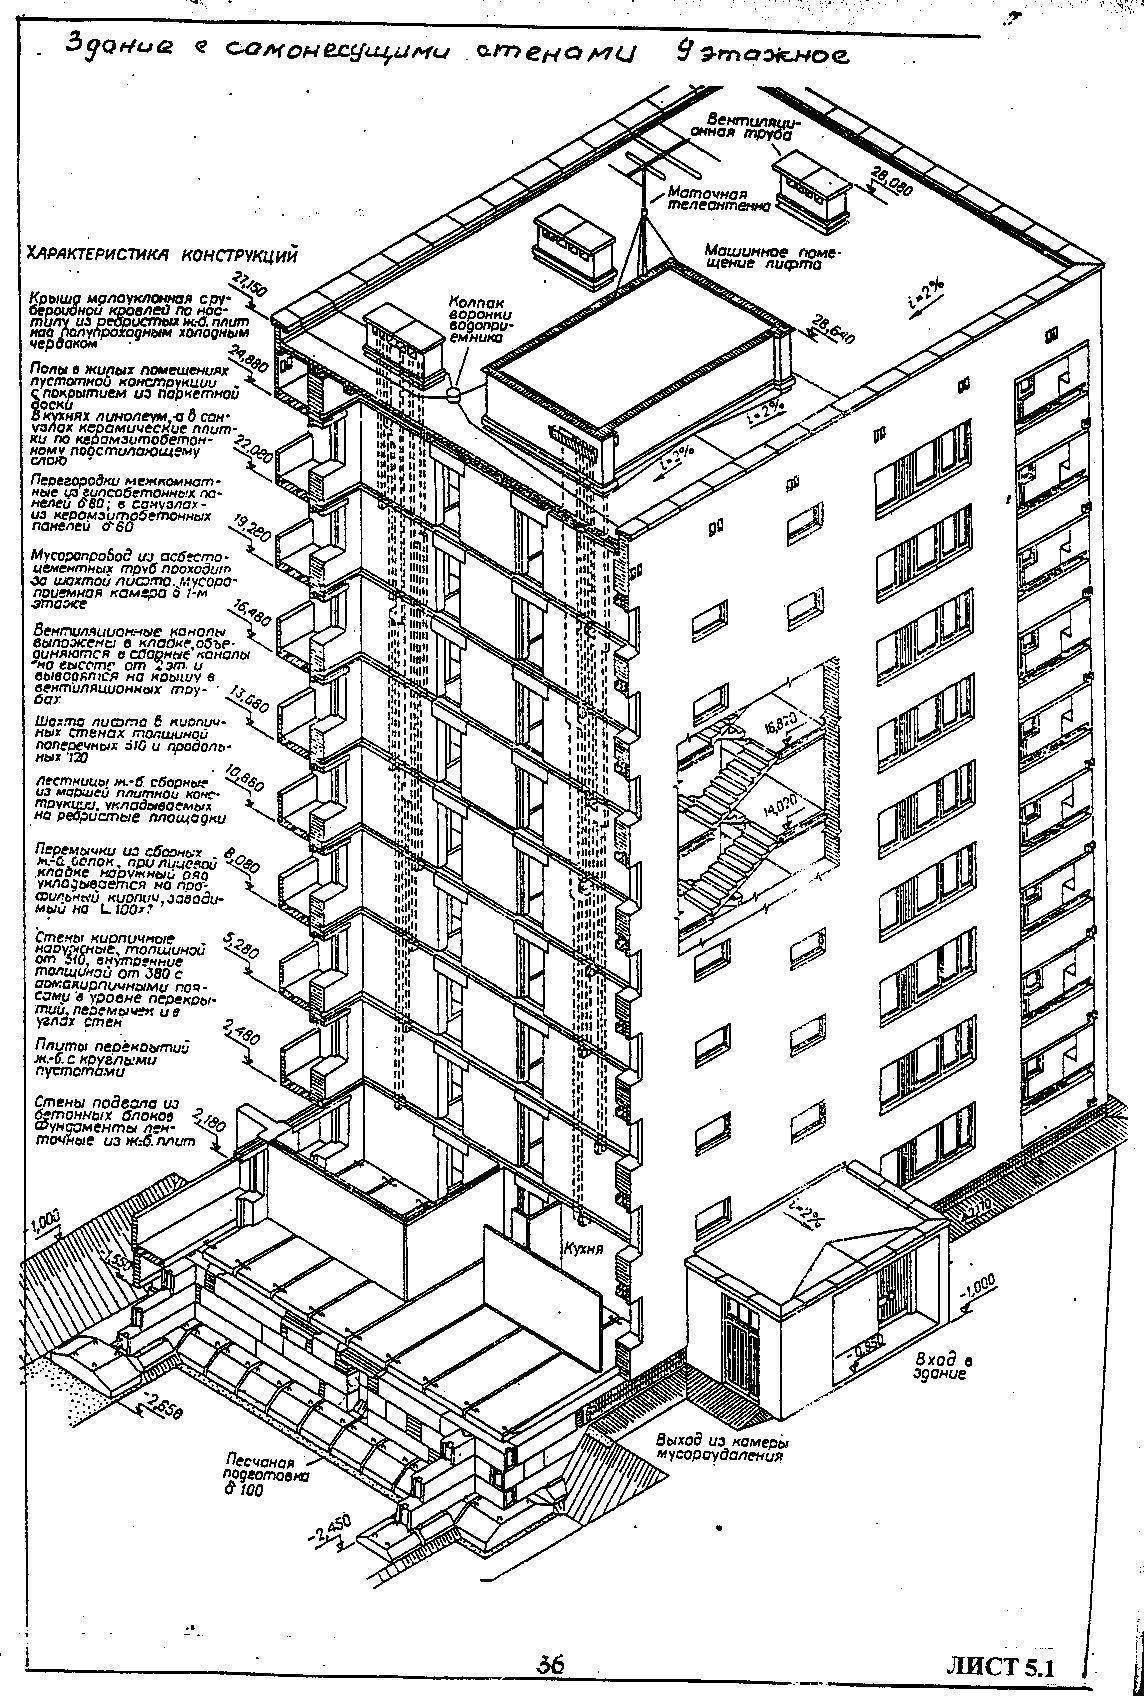 Высота 5 этажного дома в метрах, из чего складывается и почему разная